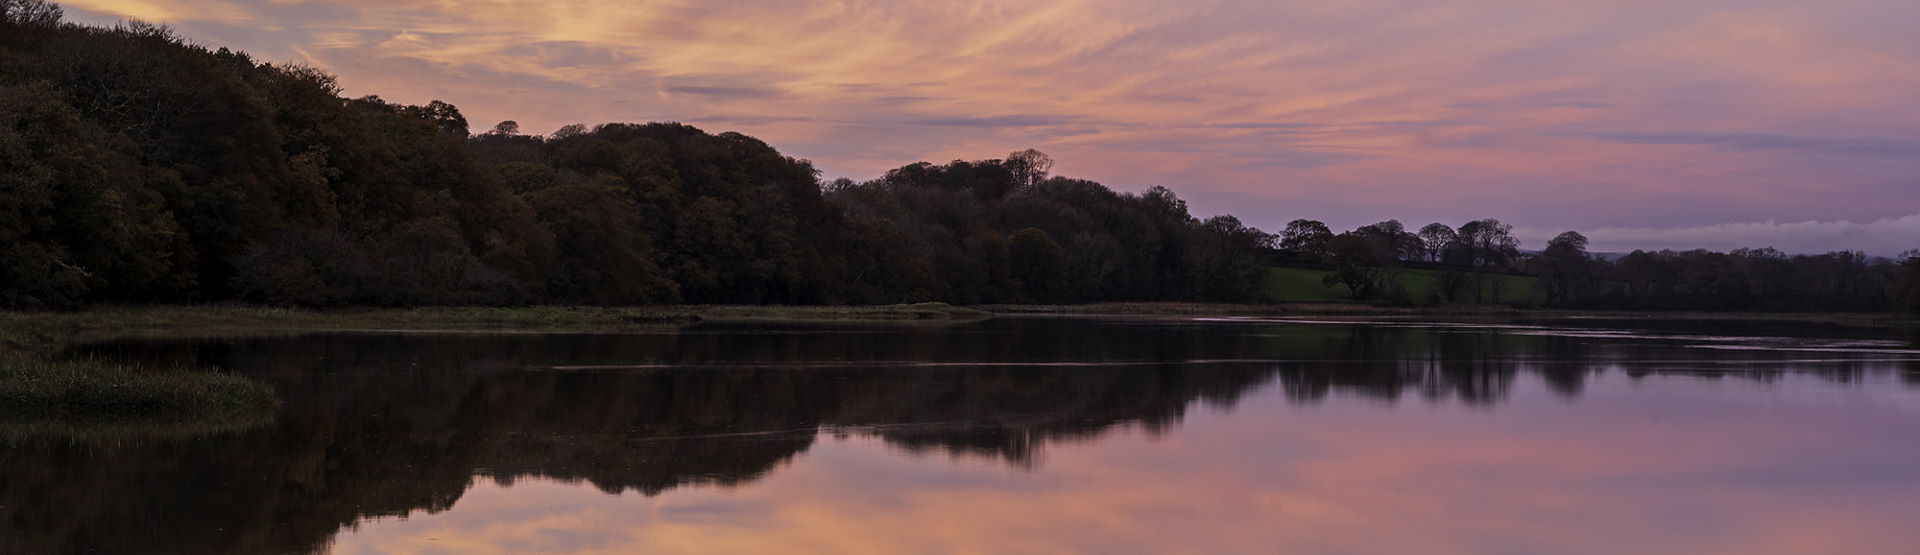 Estuary at sunset (John Archer-Thomson)